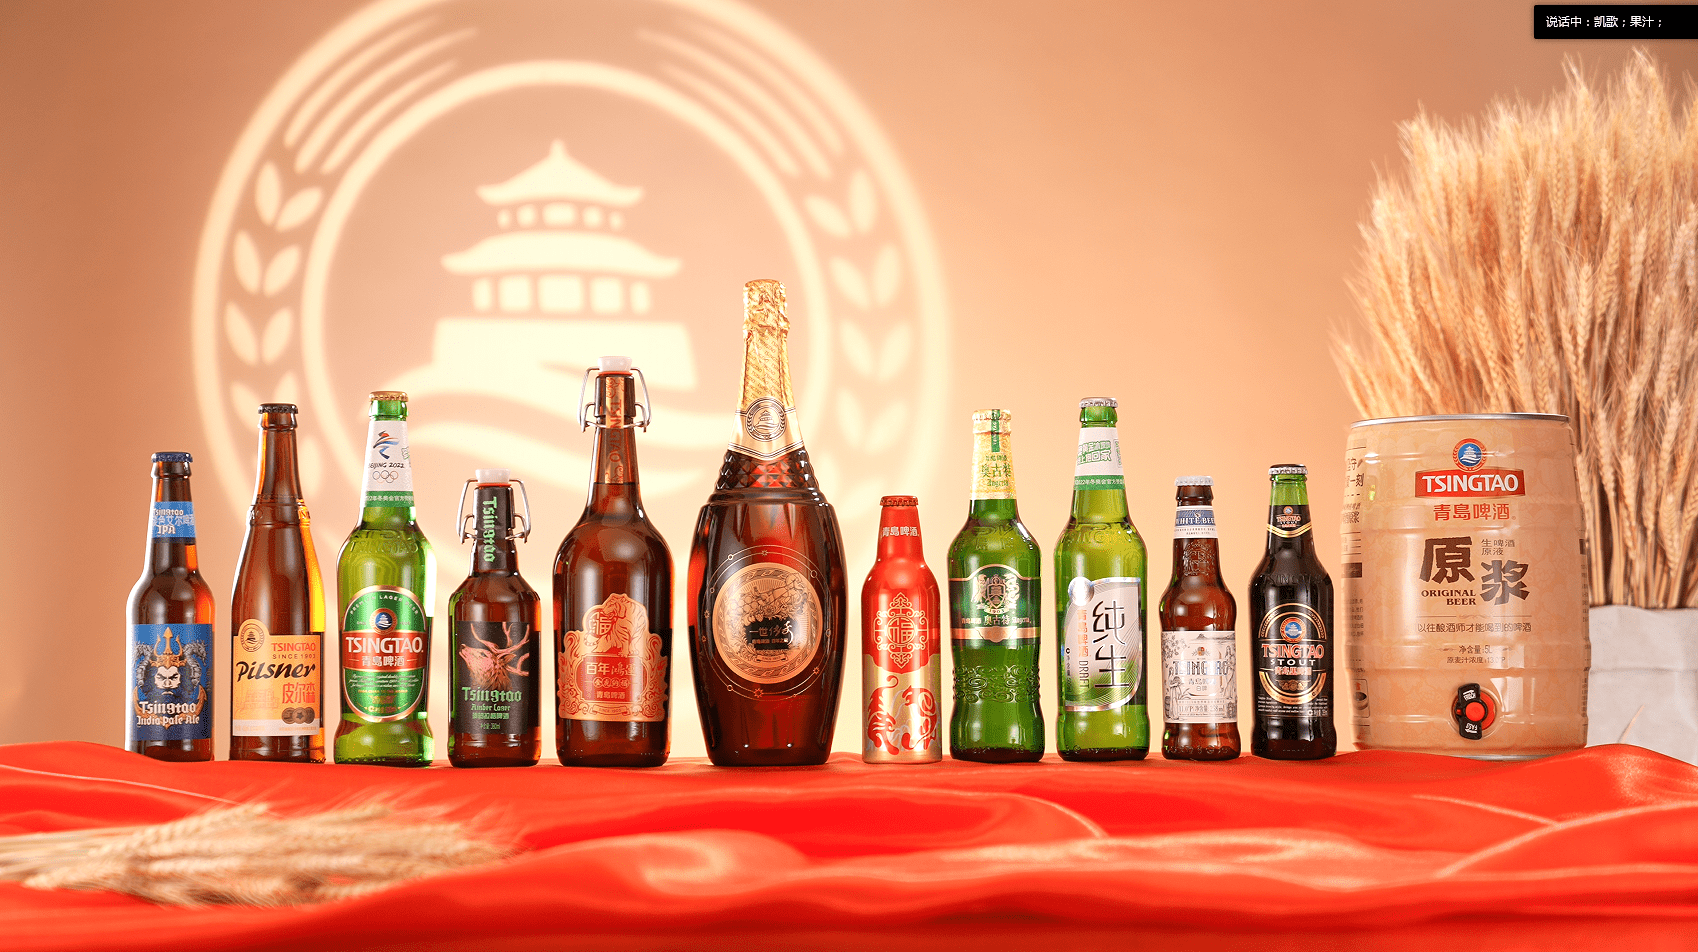 青岛啤酒官方网站-品牌与产品